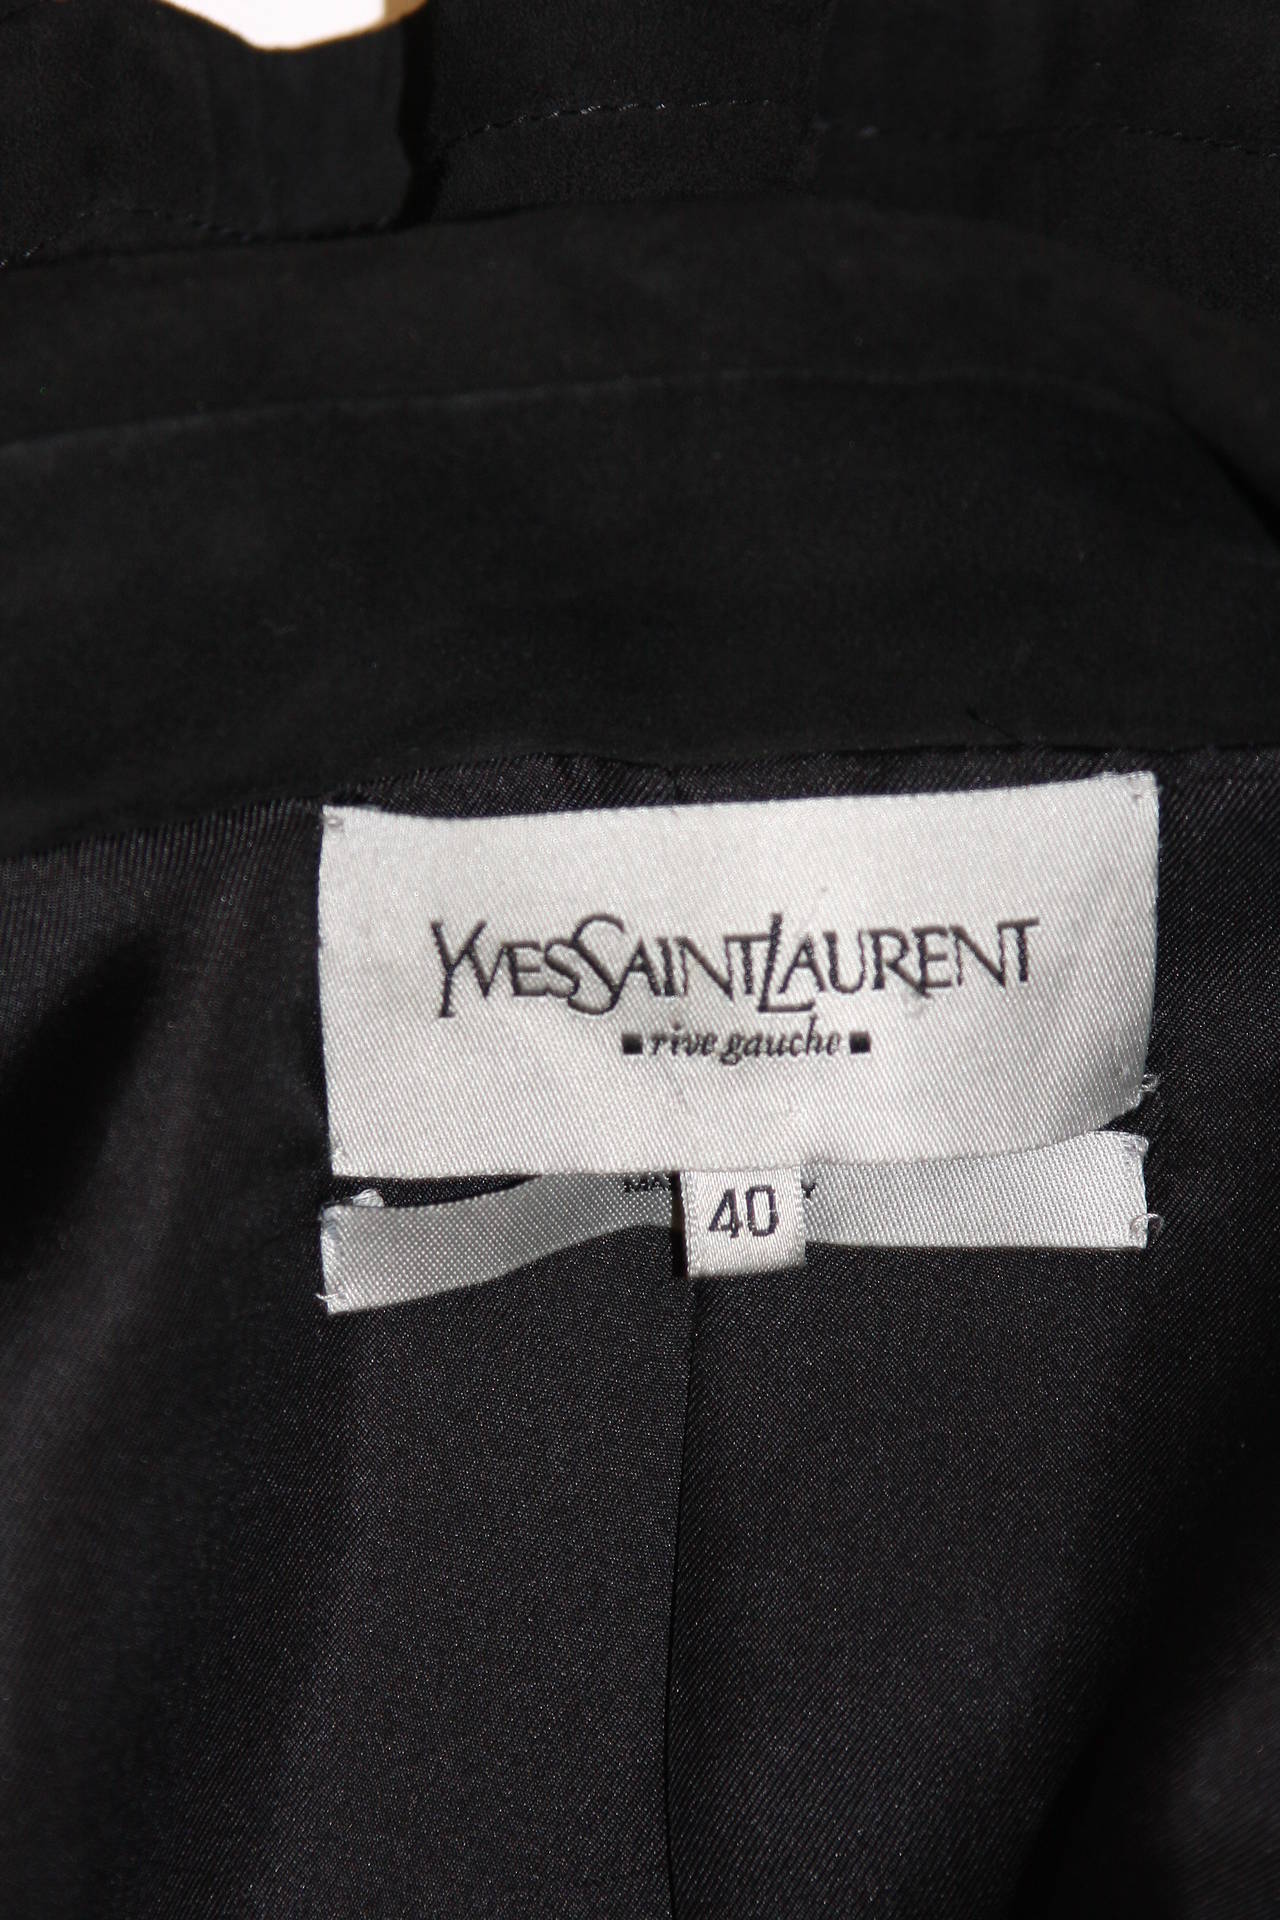 Yves Saint Laurent Black Suede Jacket Size 40 4